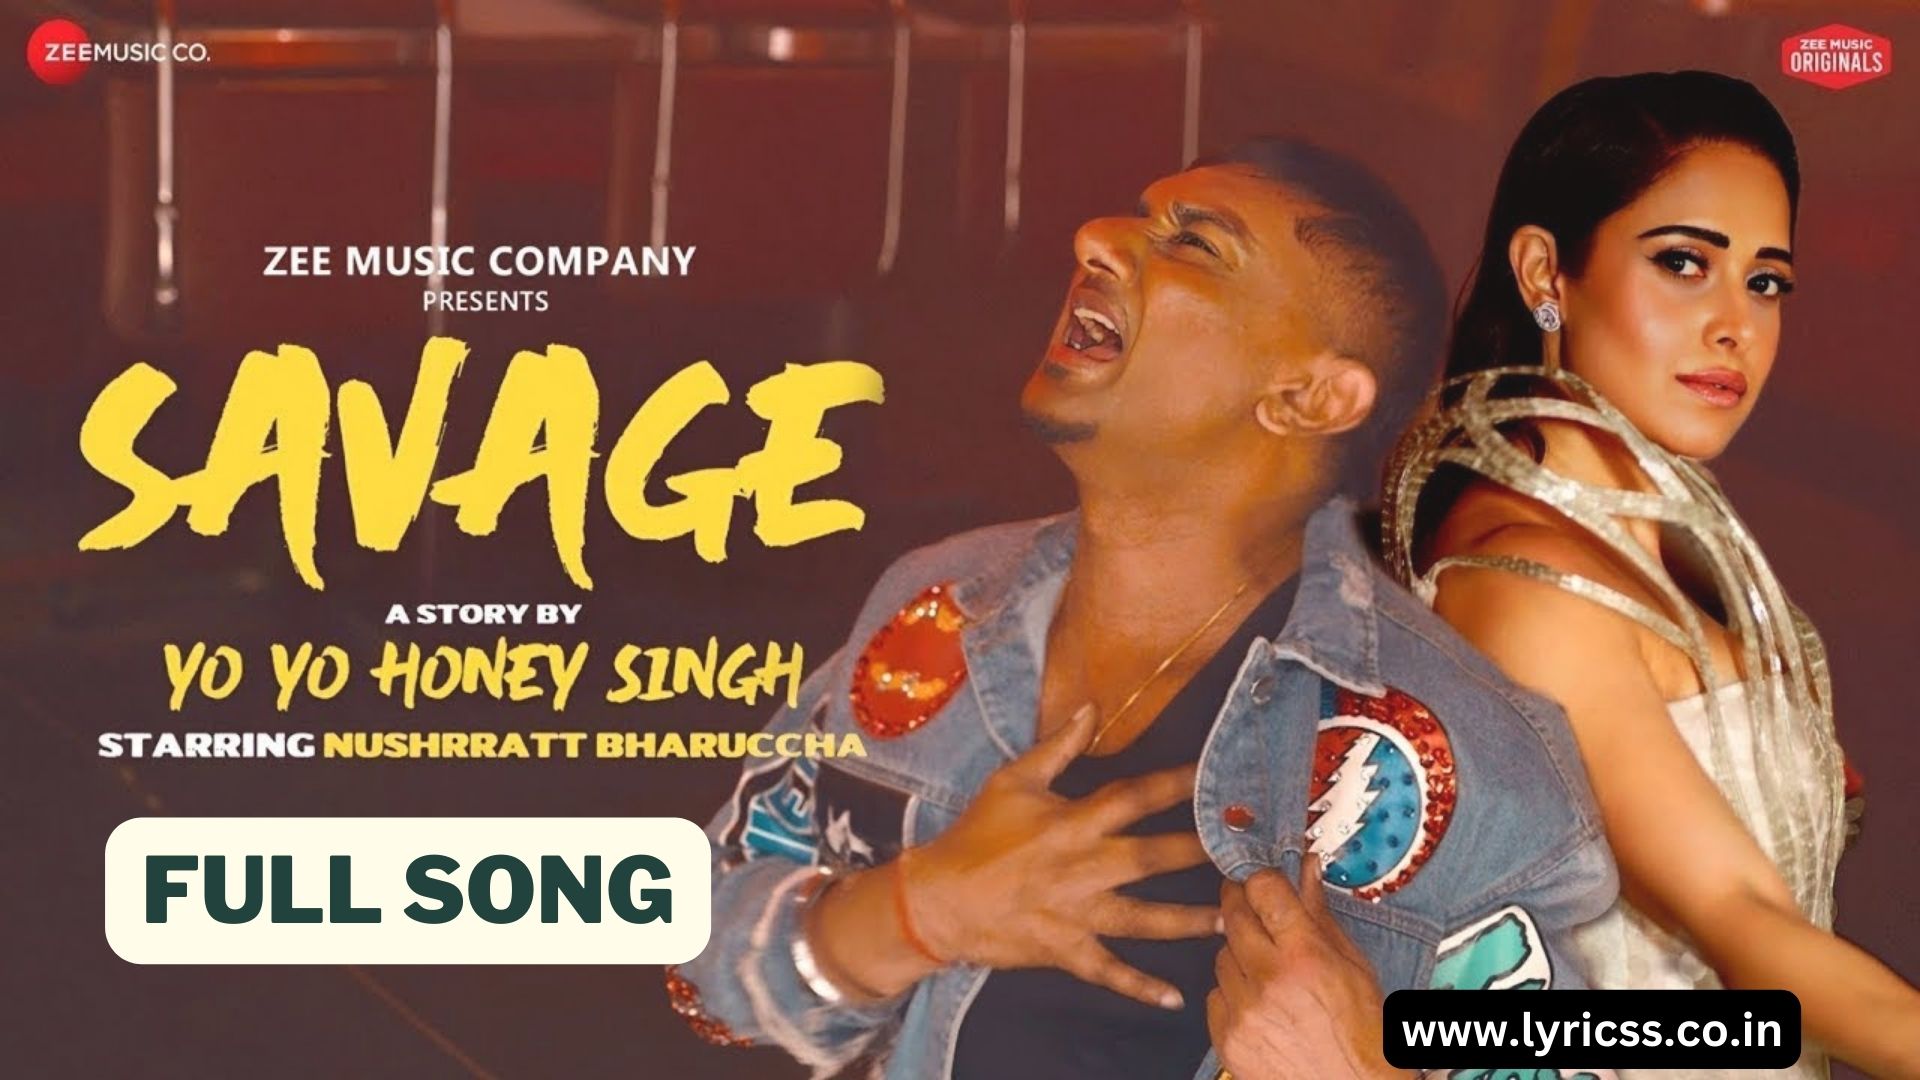 Yo Yo Honey Singh Savage Song